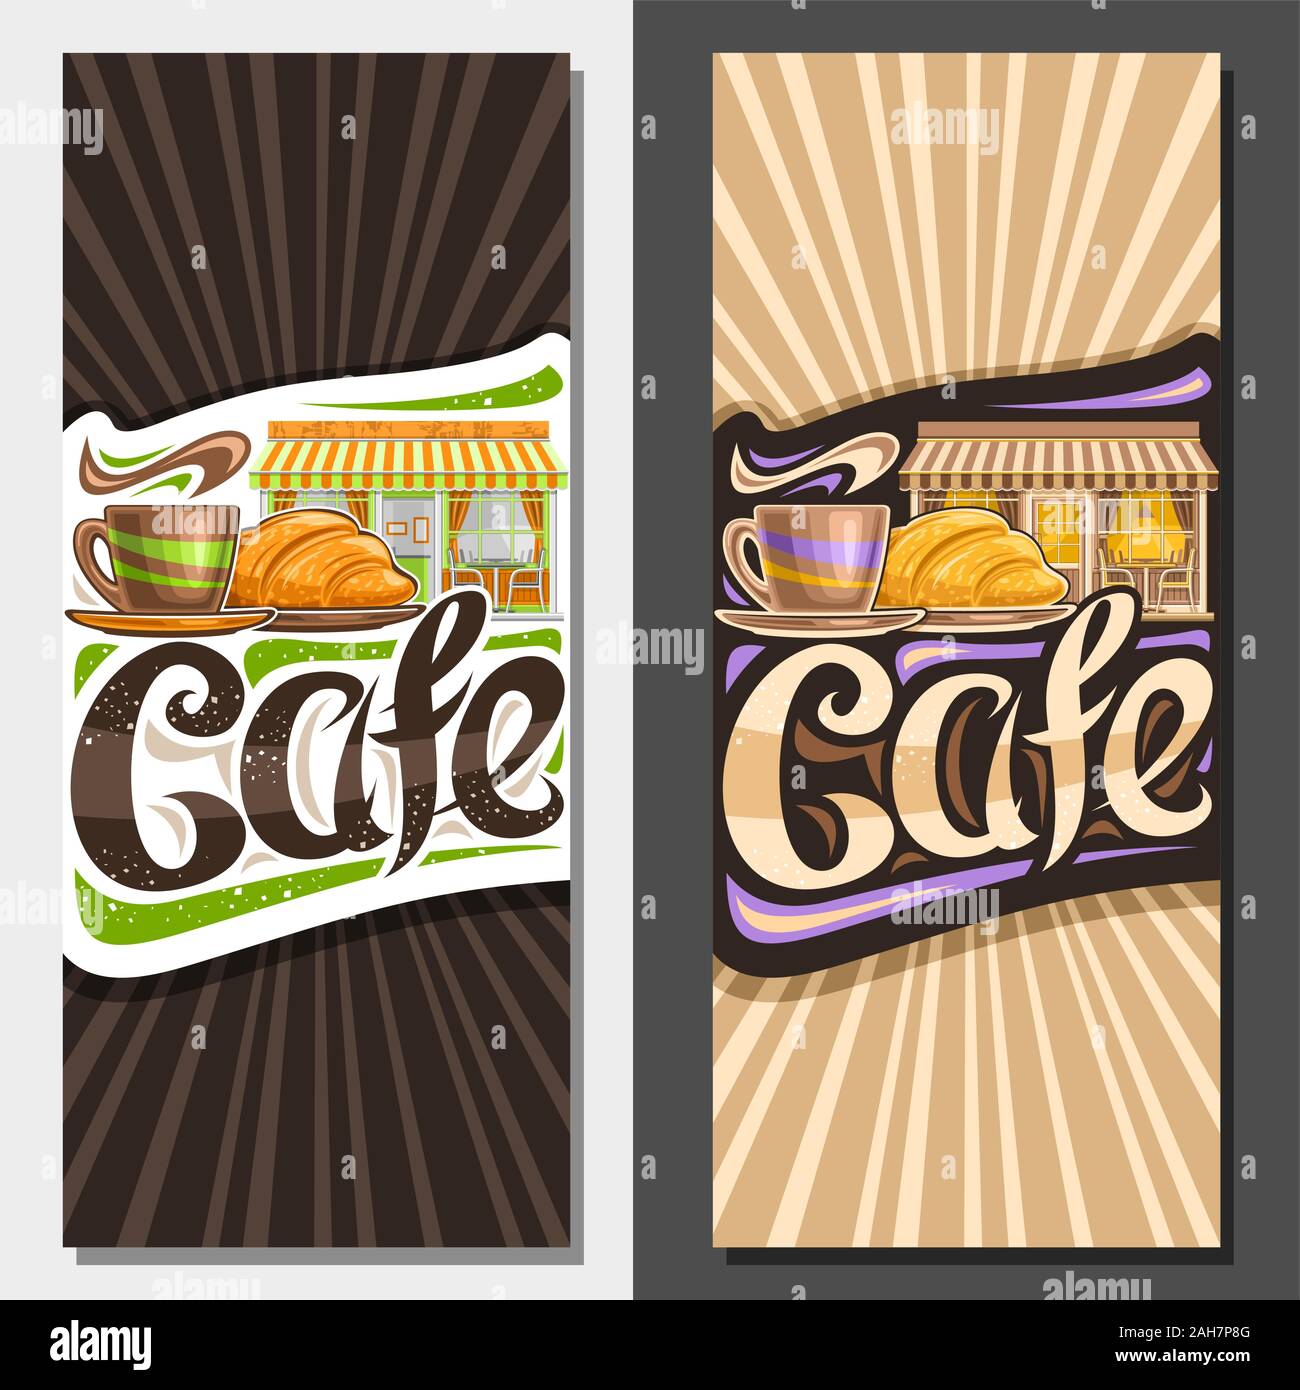 Formati vettoriali per Street Cafe, decorativi voucher per la promozione con illustrazione della tazza di caffè e croissant, originali scritte per word cafe, segno Illustrazione Vettoriale